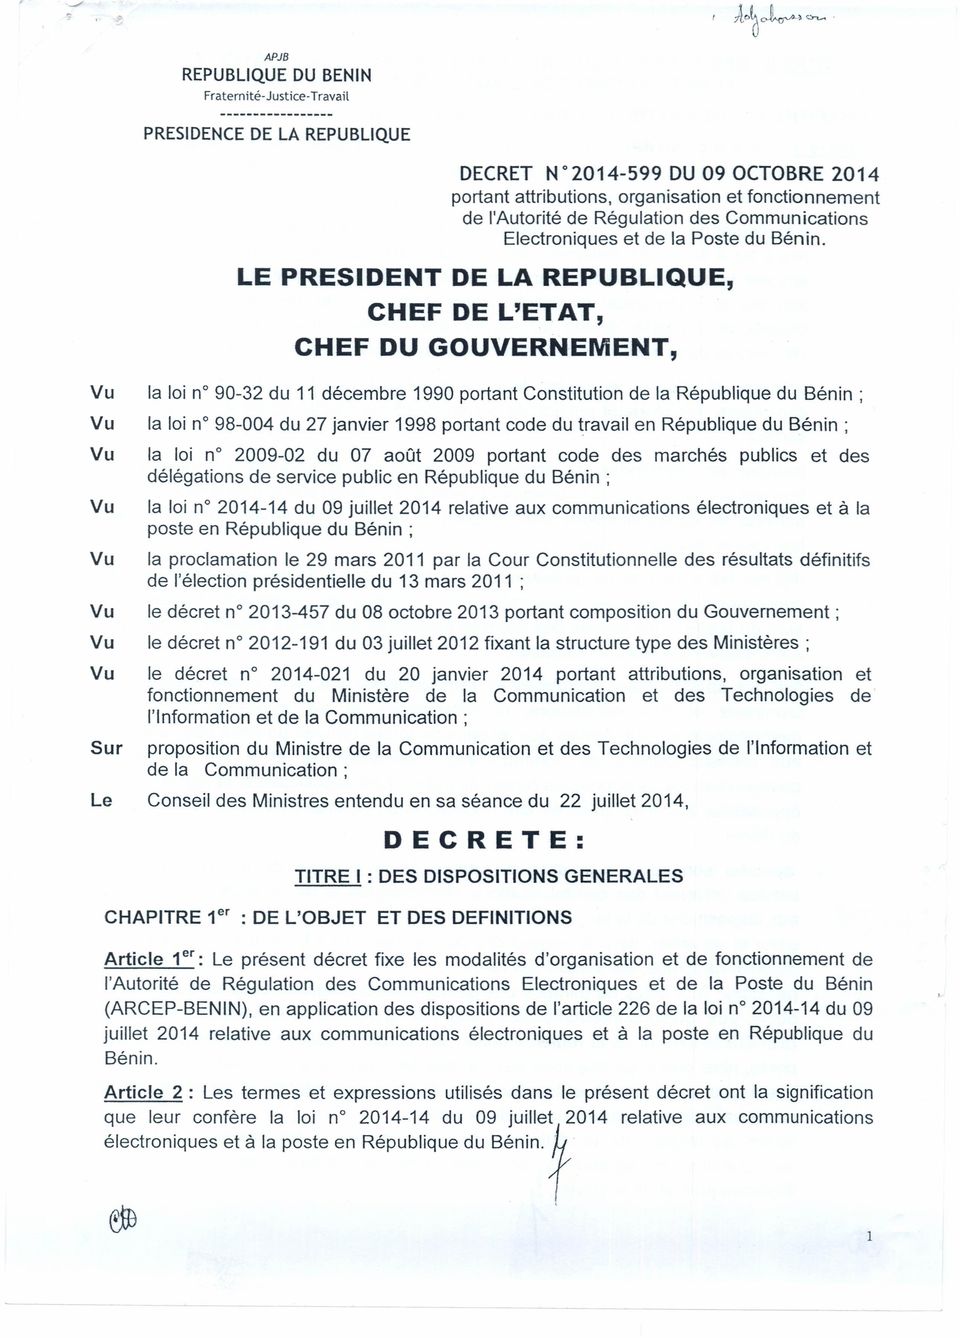 LE PRESIDENT DE LA REPUBLIQUE, CHEF DE L'ETAT, CHEF DU GOUVERNEMENT, Vu Vu la loi n 90-32 du 11 décembre 1990 portant Constitution de la République du Bénin; la loi n 98-004 du 27 janvier 1998